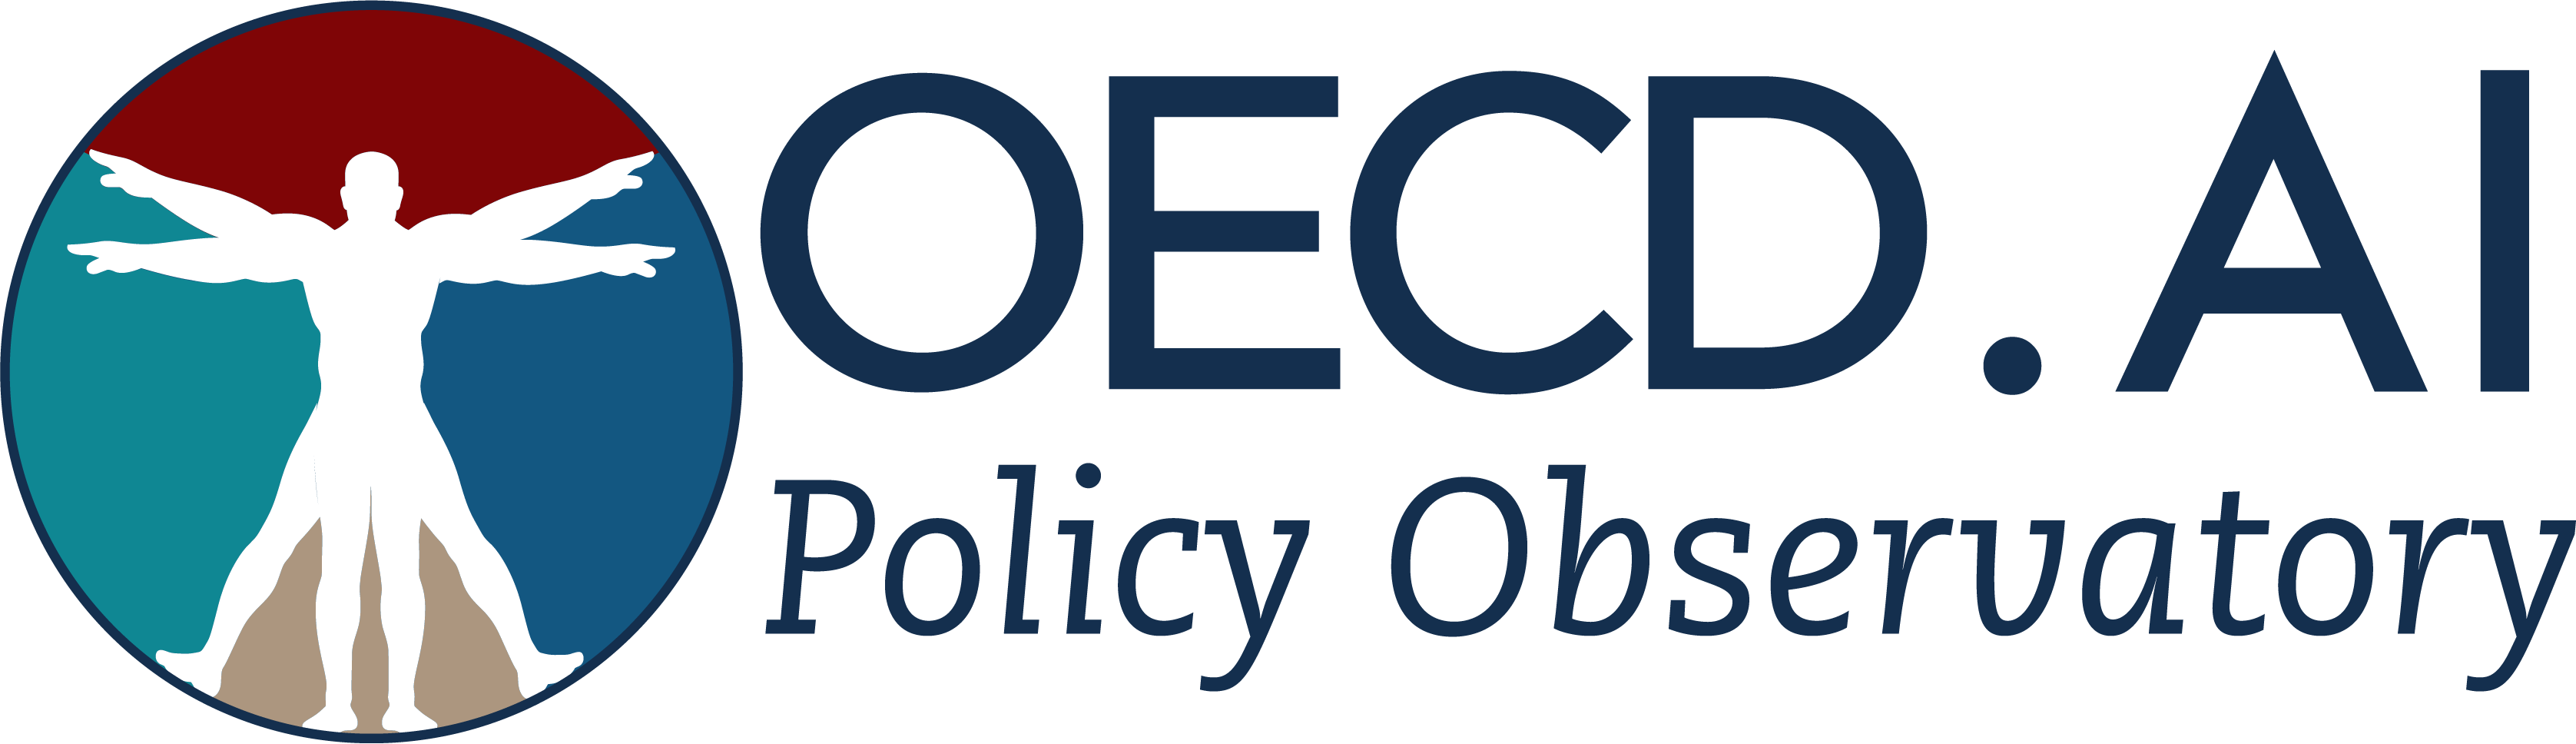 Logotyp organizacji OECD